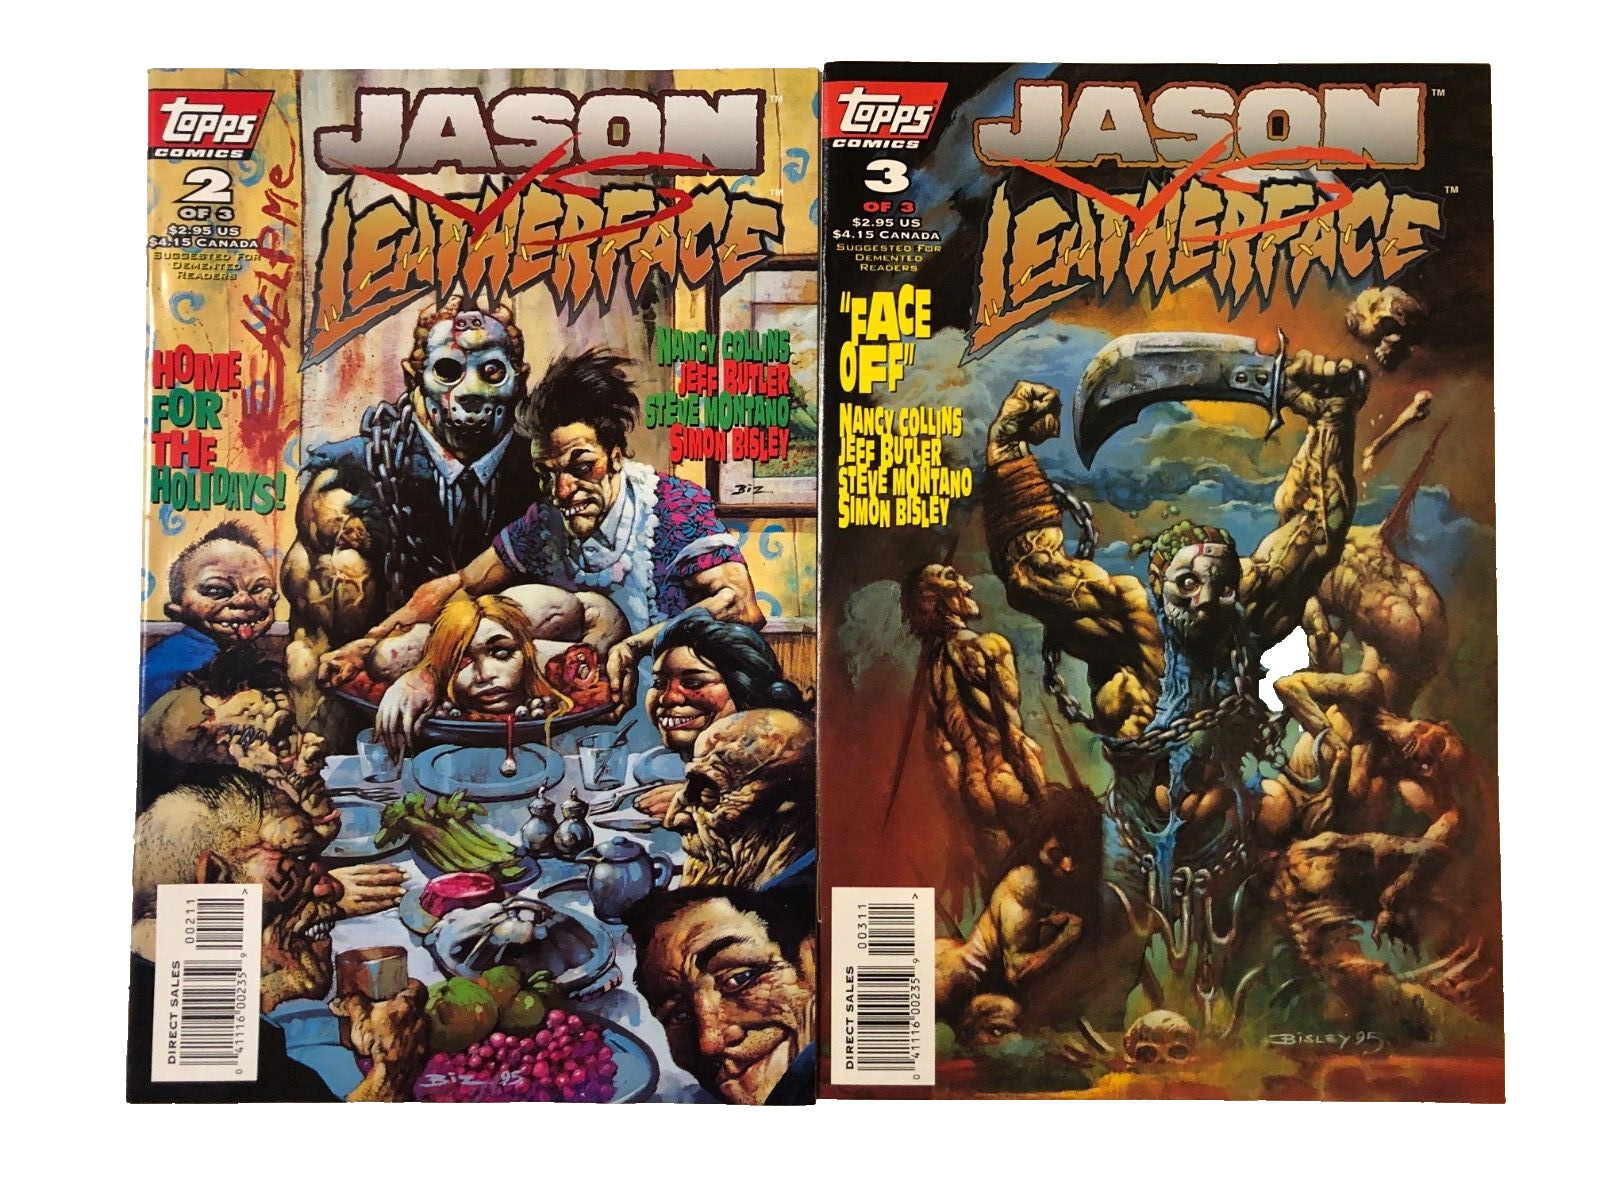 Jason vs Leatherface 2 & 3 Topps Comics